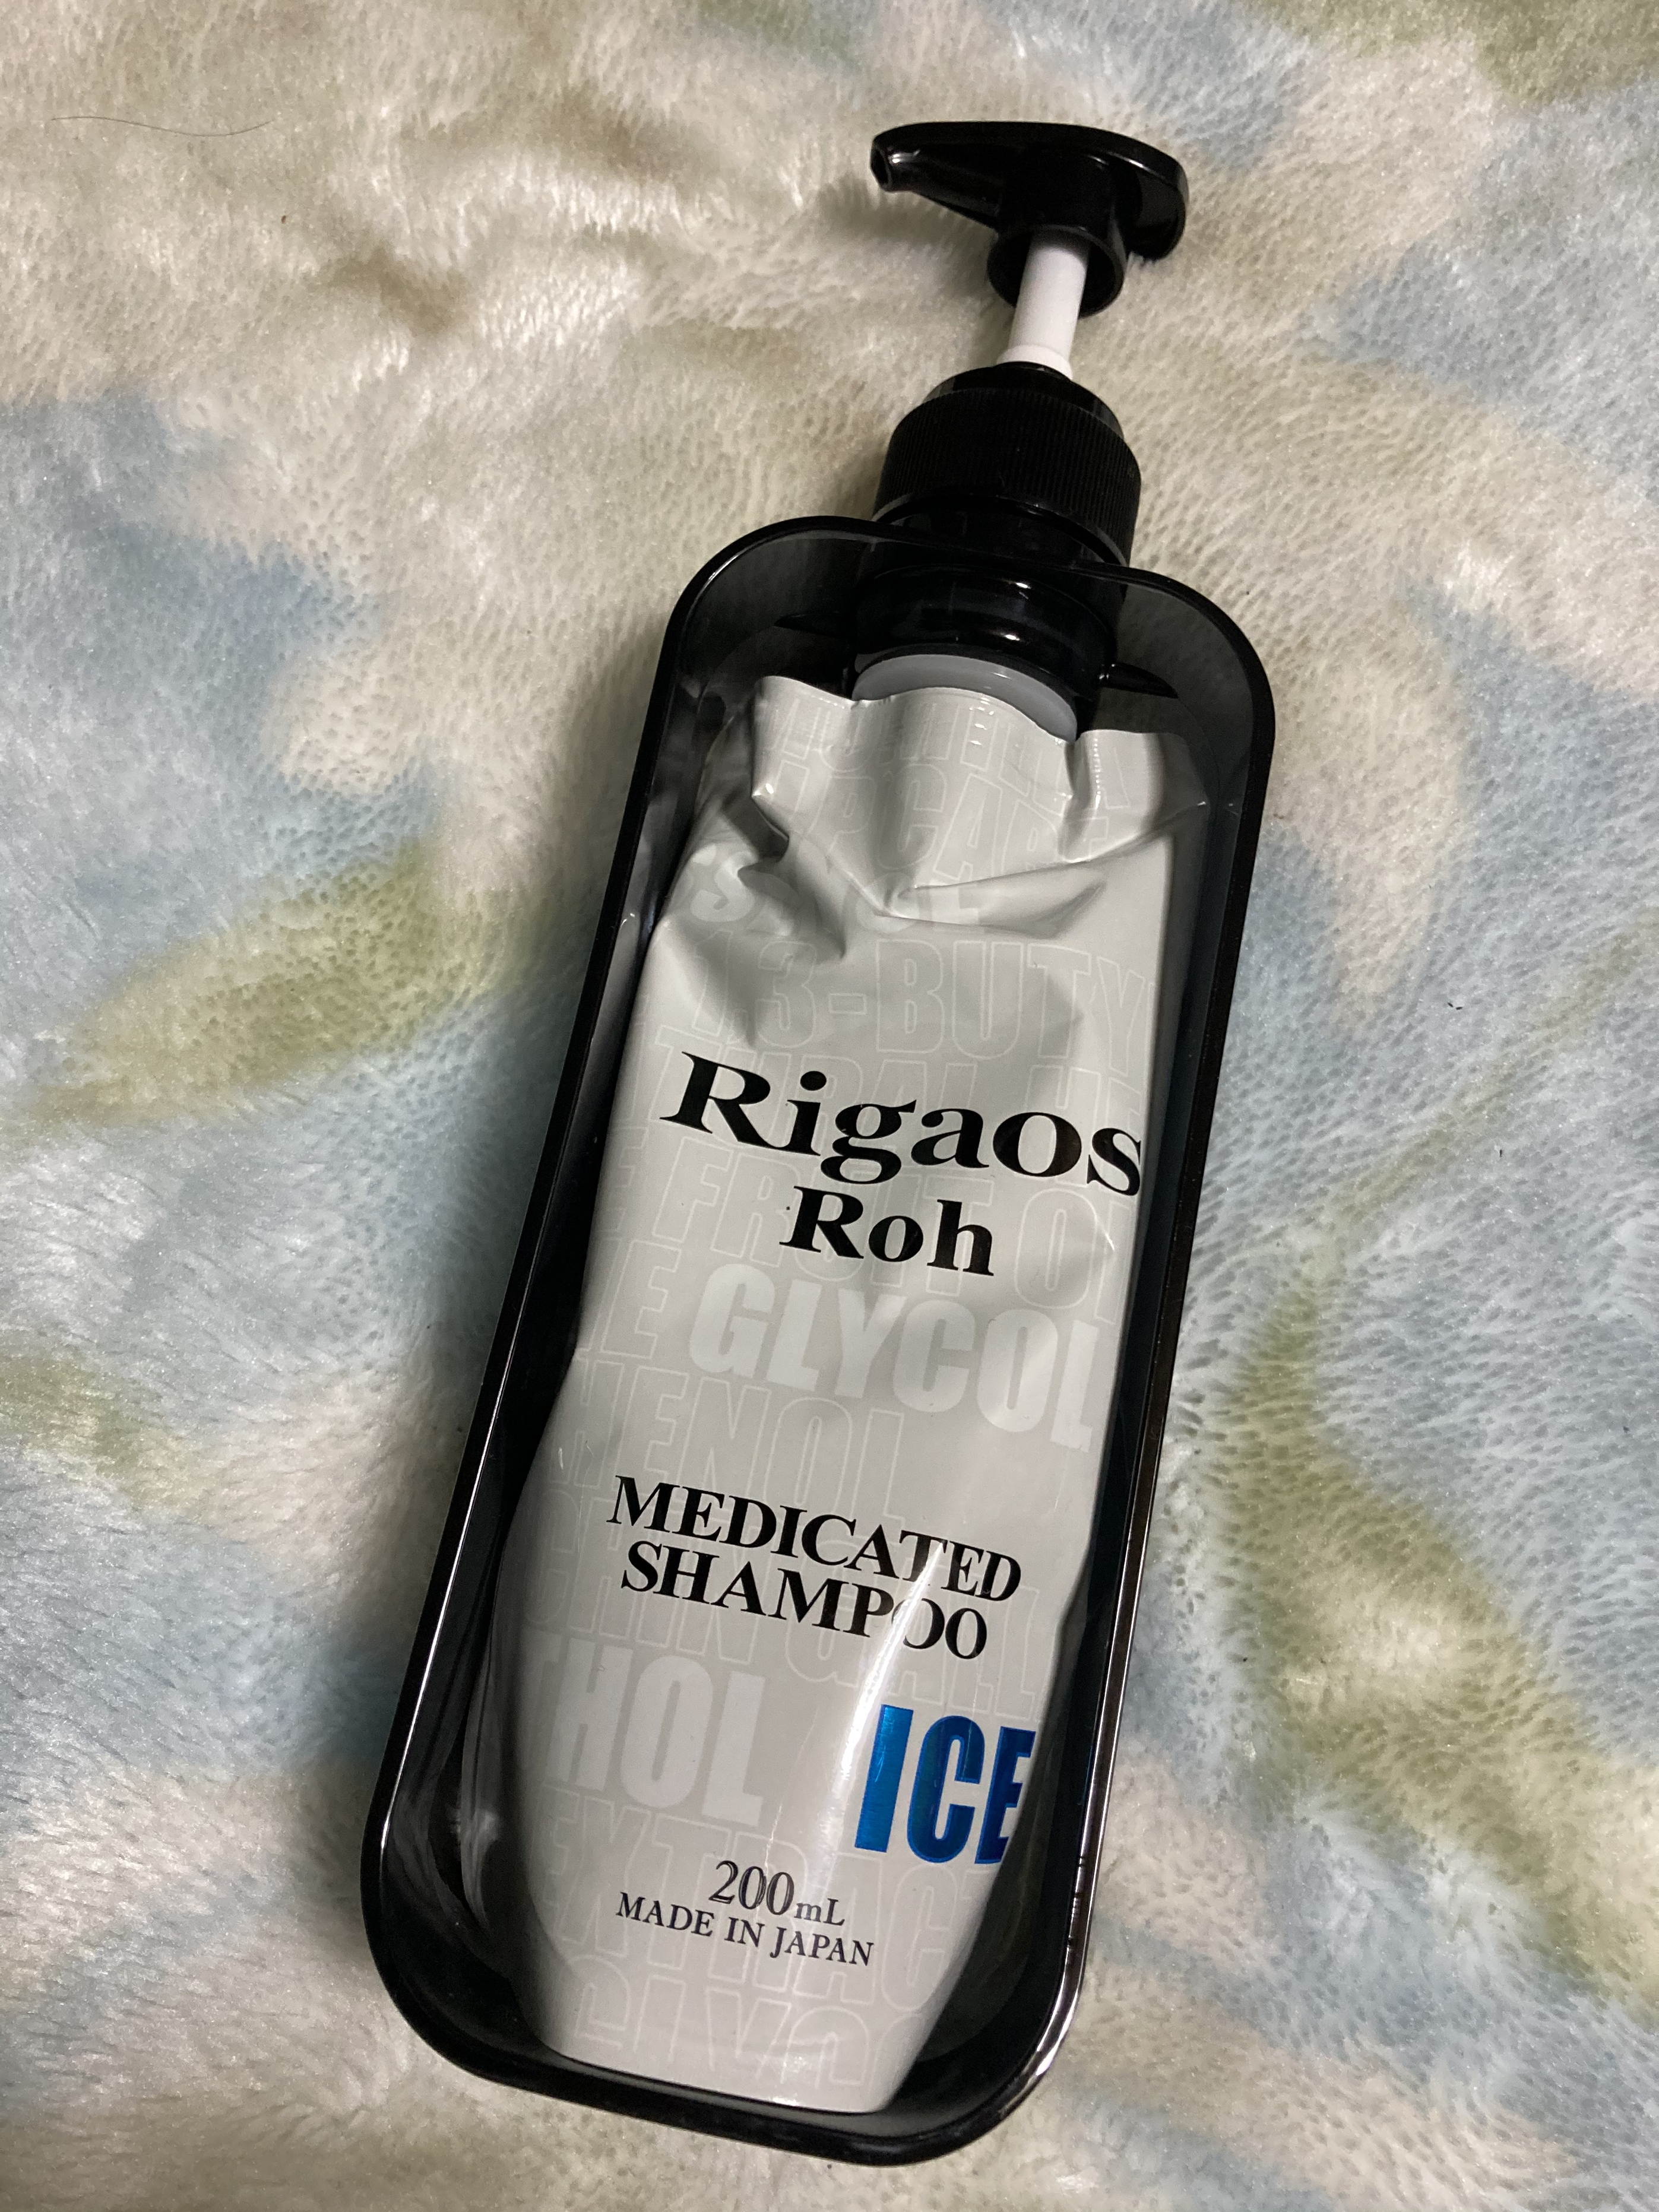 RigaosRoh(リガオスロー) 薬用スカルプケアシャンプーICEを使ったかおるさんのクチコミ画像1